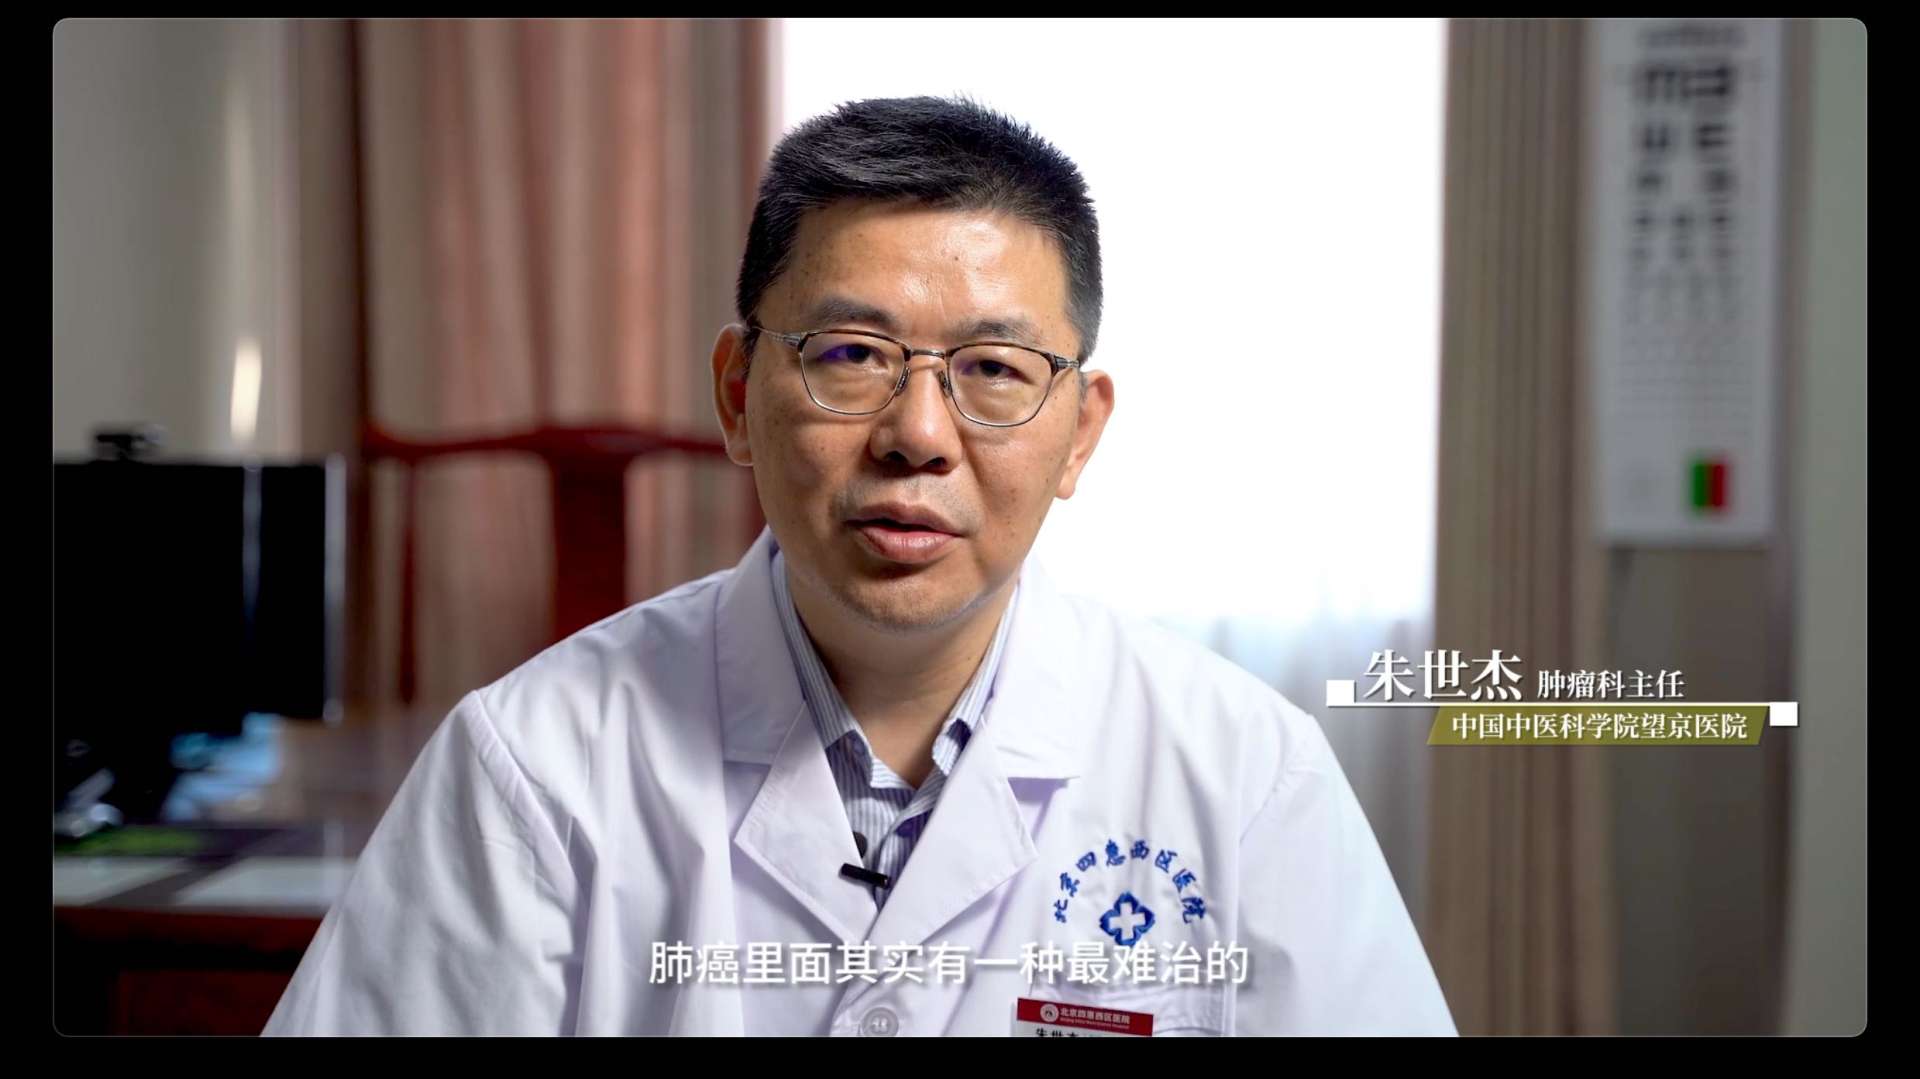 中西医治疗小细胞肺癌——朱世杰主任医疗类纪录片